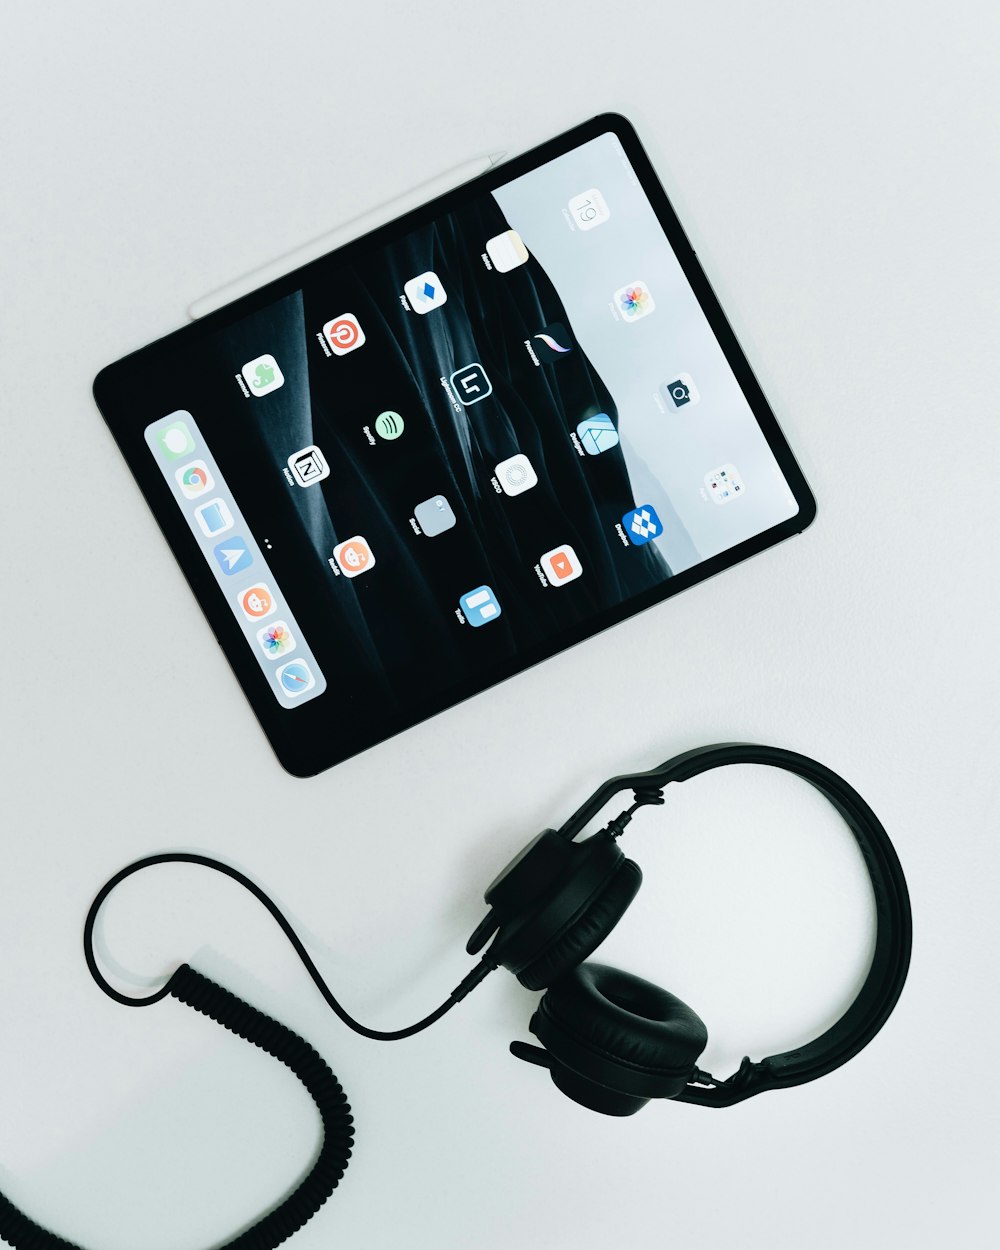 검은색 iPad 및 유선 헤드폰의 평평한 누워있는 사진